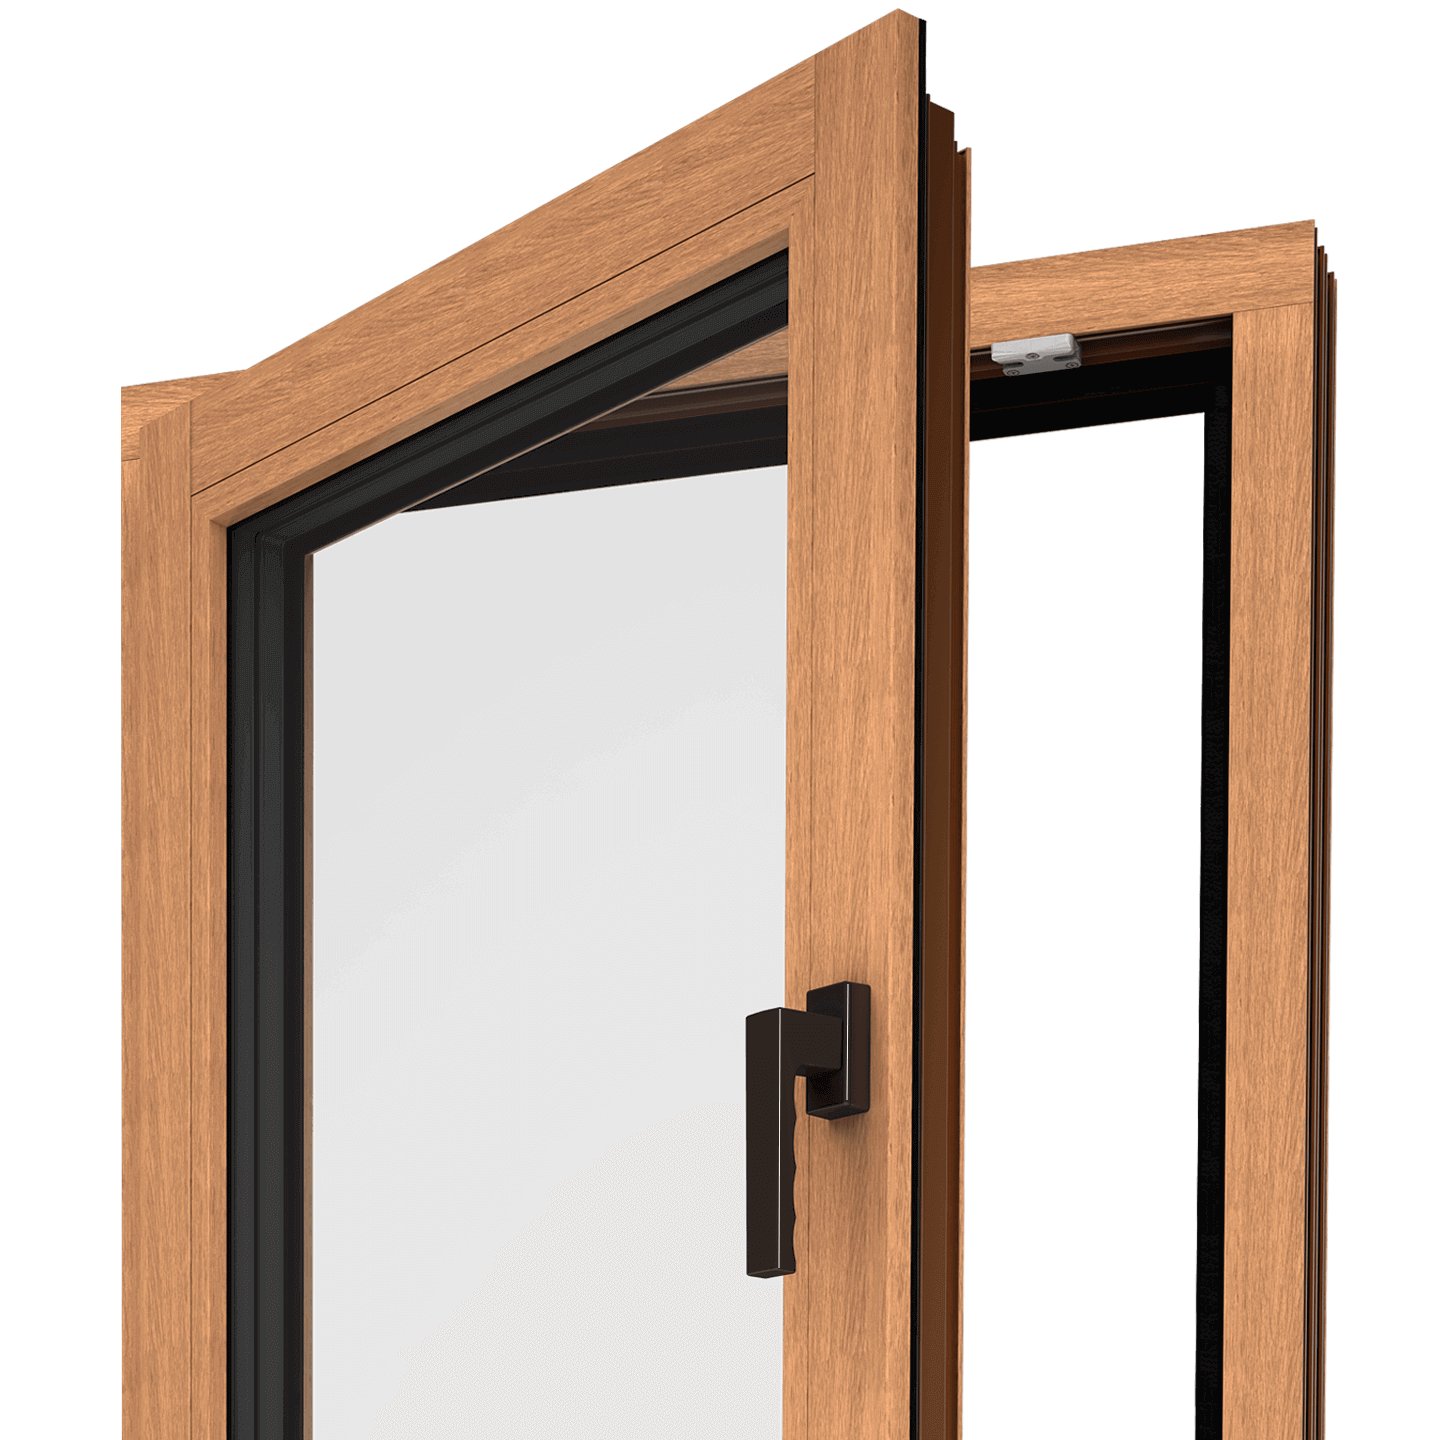 Okno Wood Look, które przypomina tradycyjne okno wykonane z drewna.